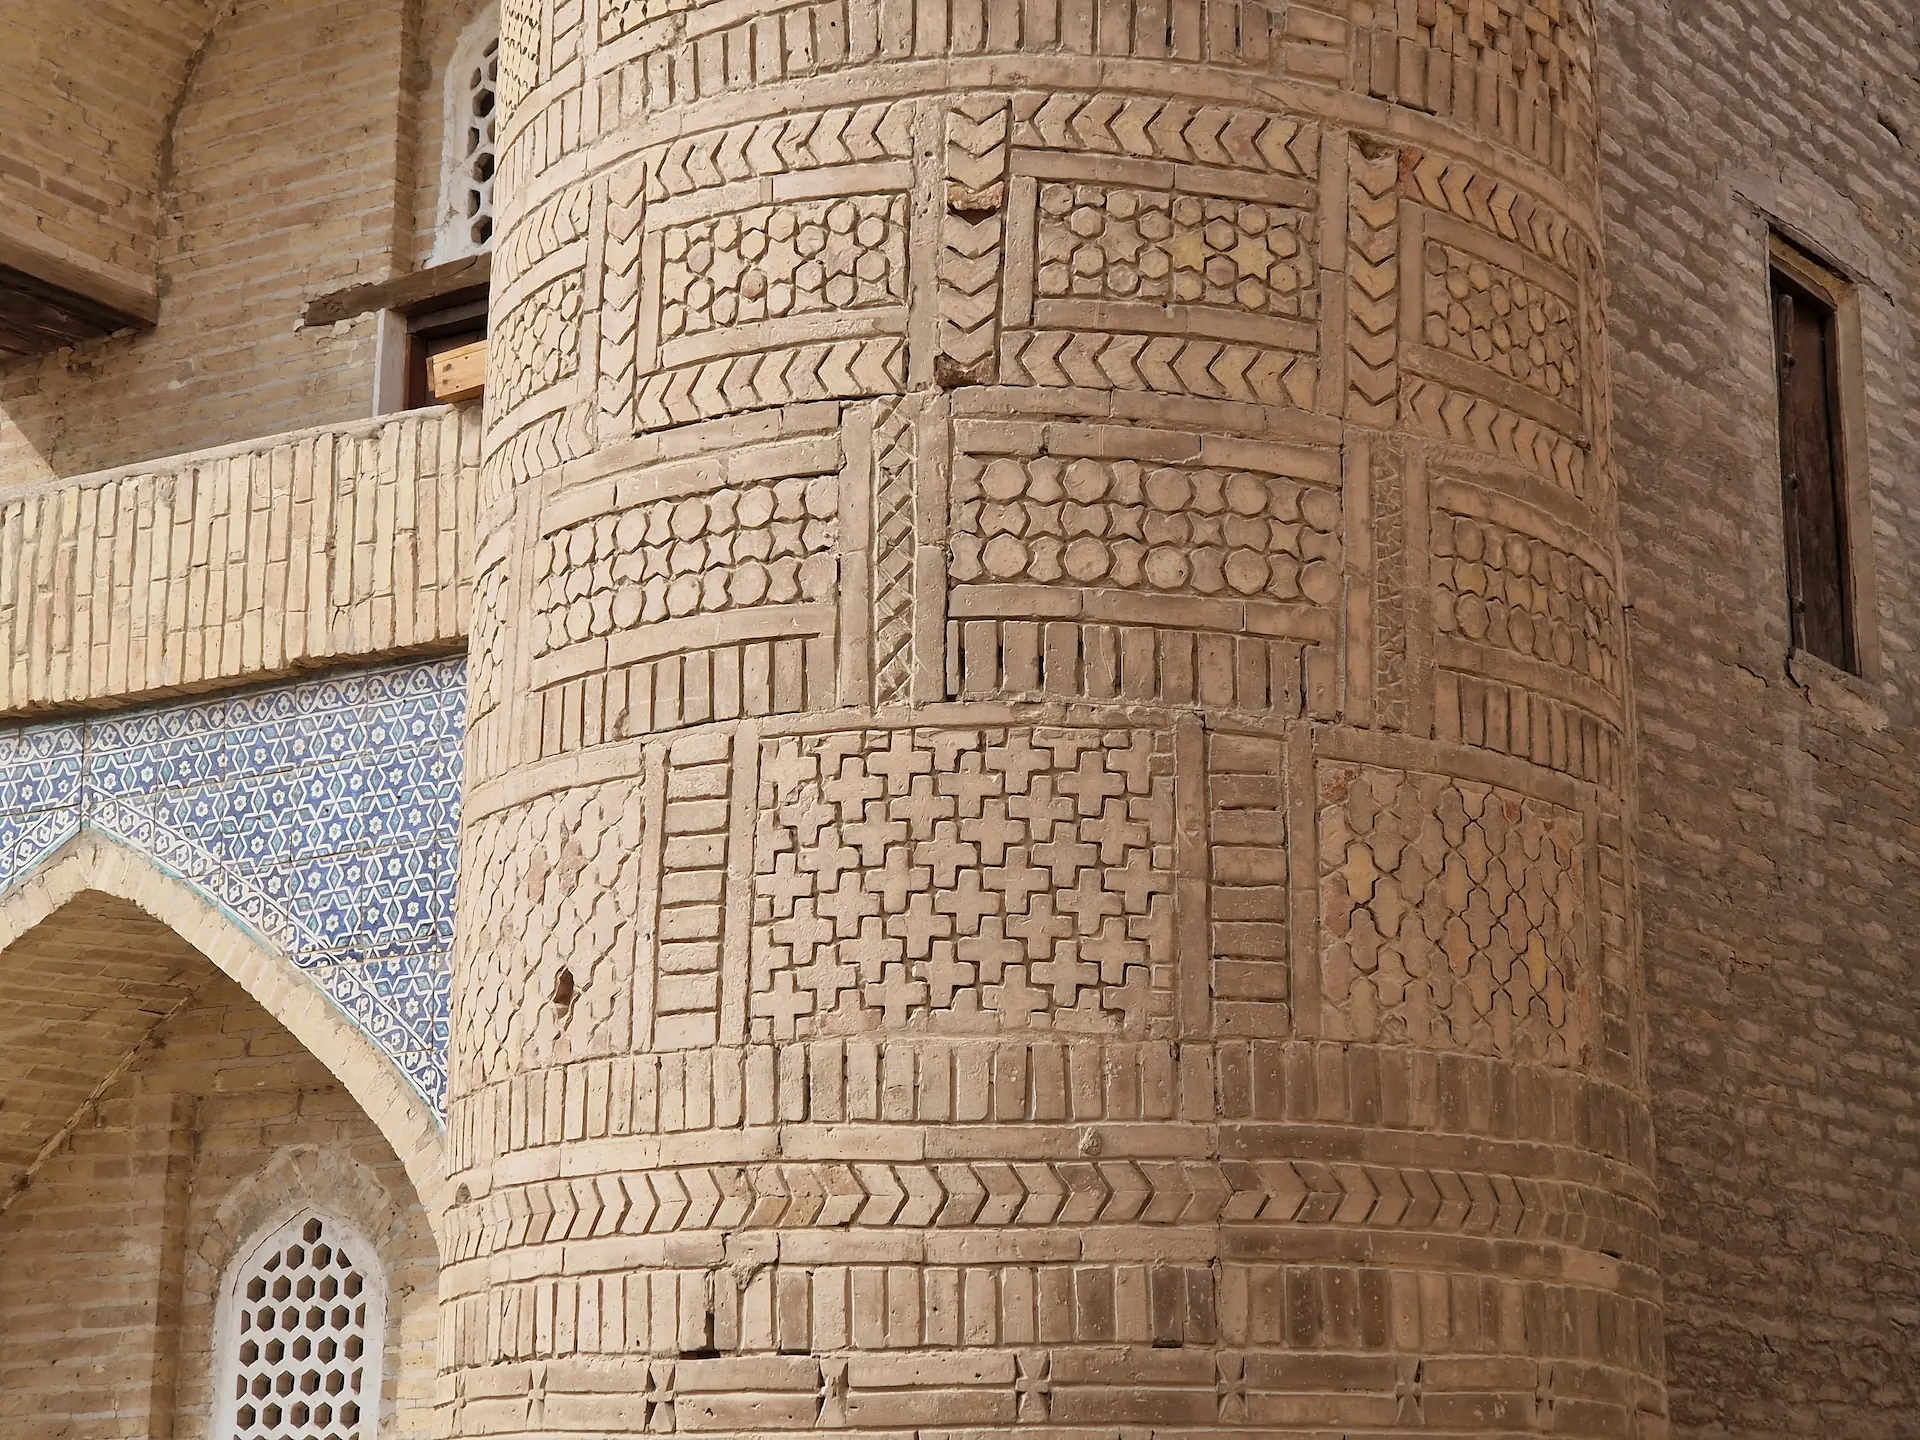 Le détail d'une des tours de la madrassa : la terre a été gravée de motifs géométriques